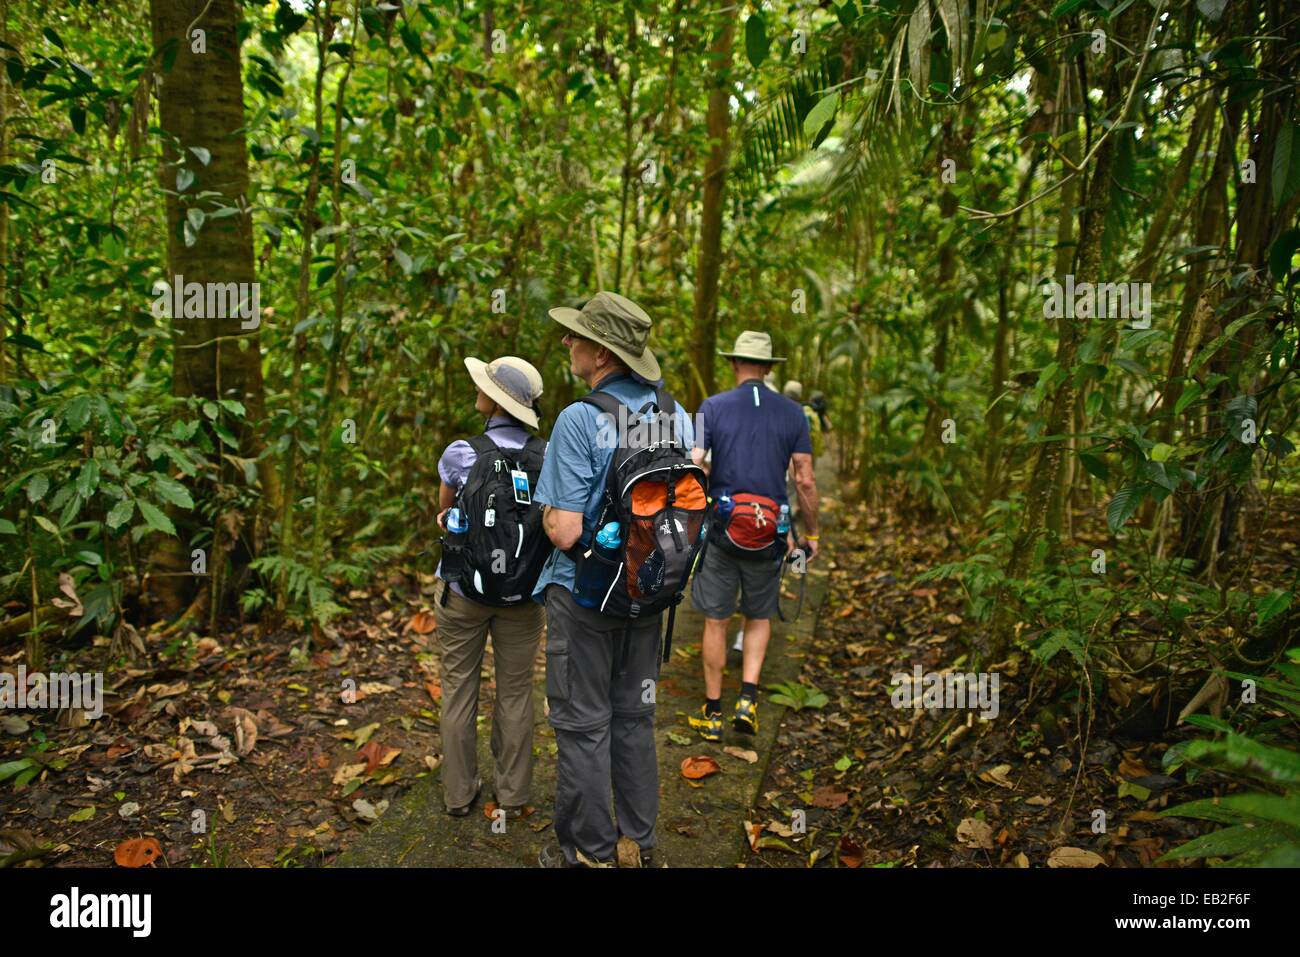 Los turistas pasear por el bosque lluvioso de Costa Rica, La Estación Biológica La Selva, un importante centro de investigación dedicado a la ecología del bosque lluvioso. Foto de stock